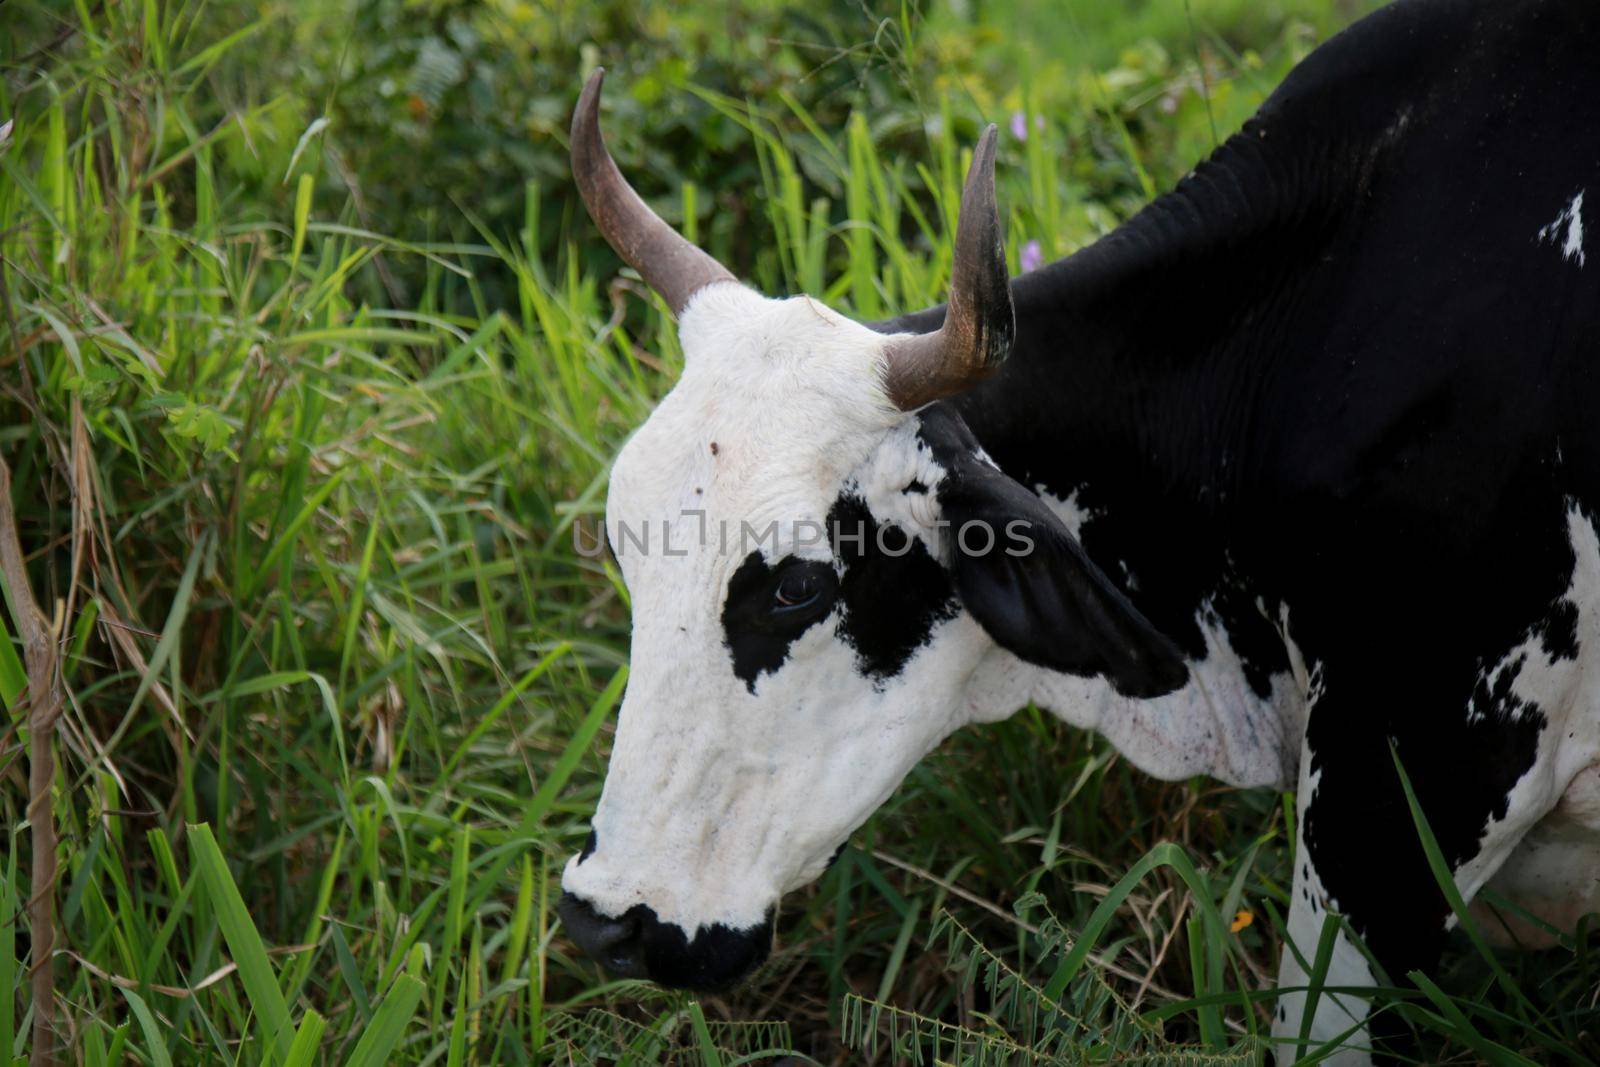 mata de sao joao, bahia / brazil - november 8, 2020: dairy cow is seen on a farm in the rural area of the city of Mata de Sao Joao.